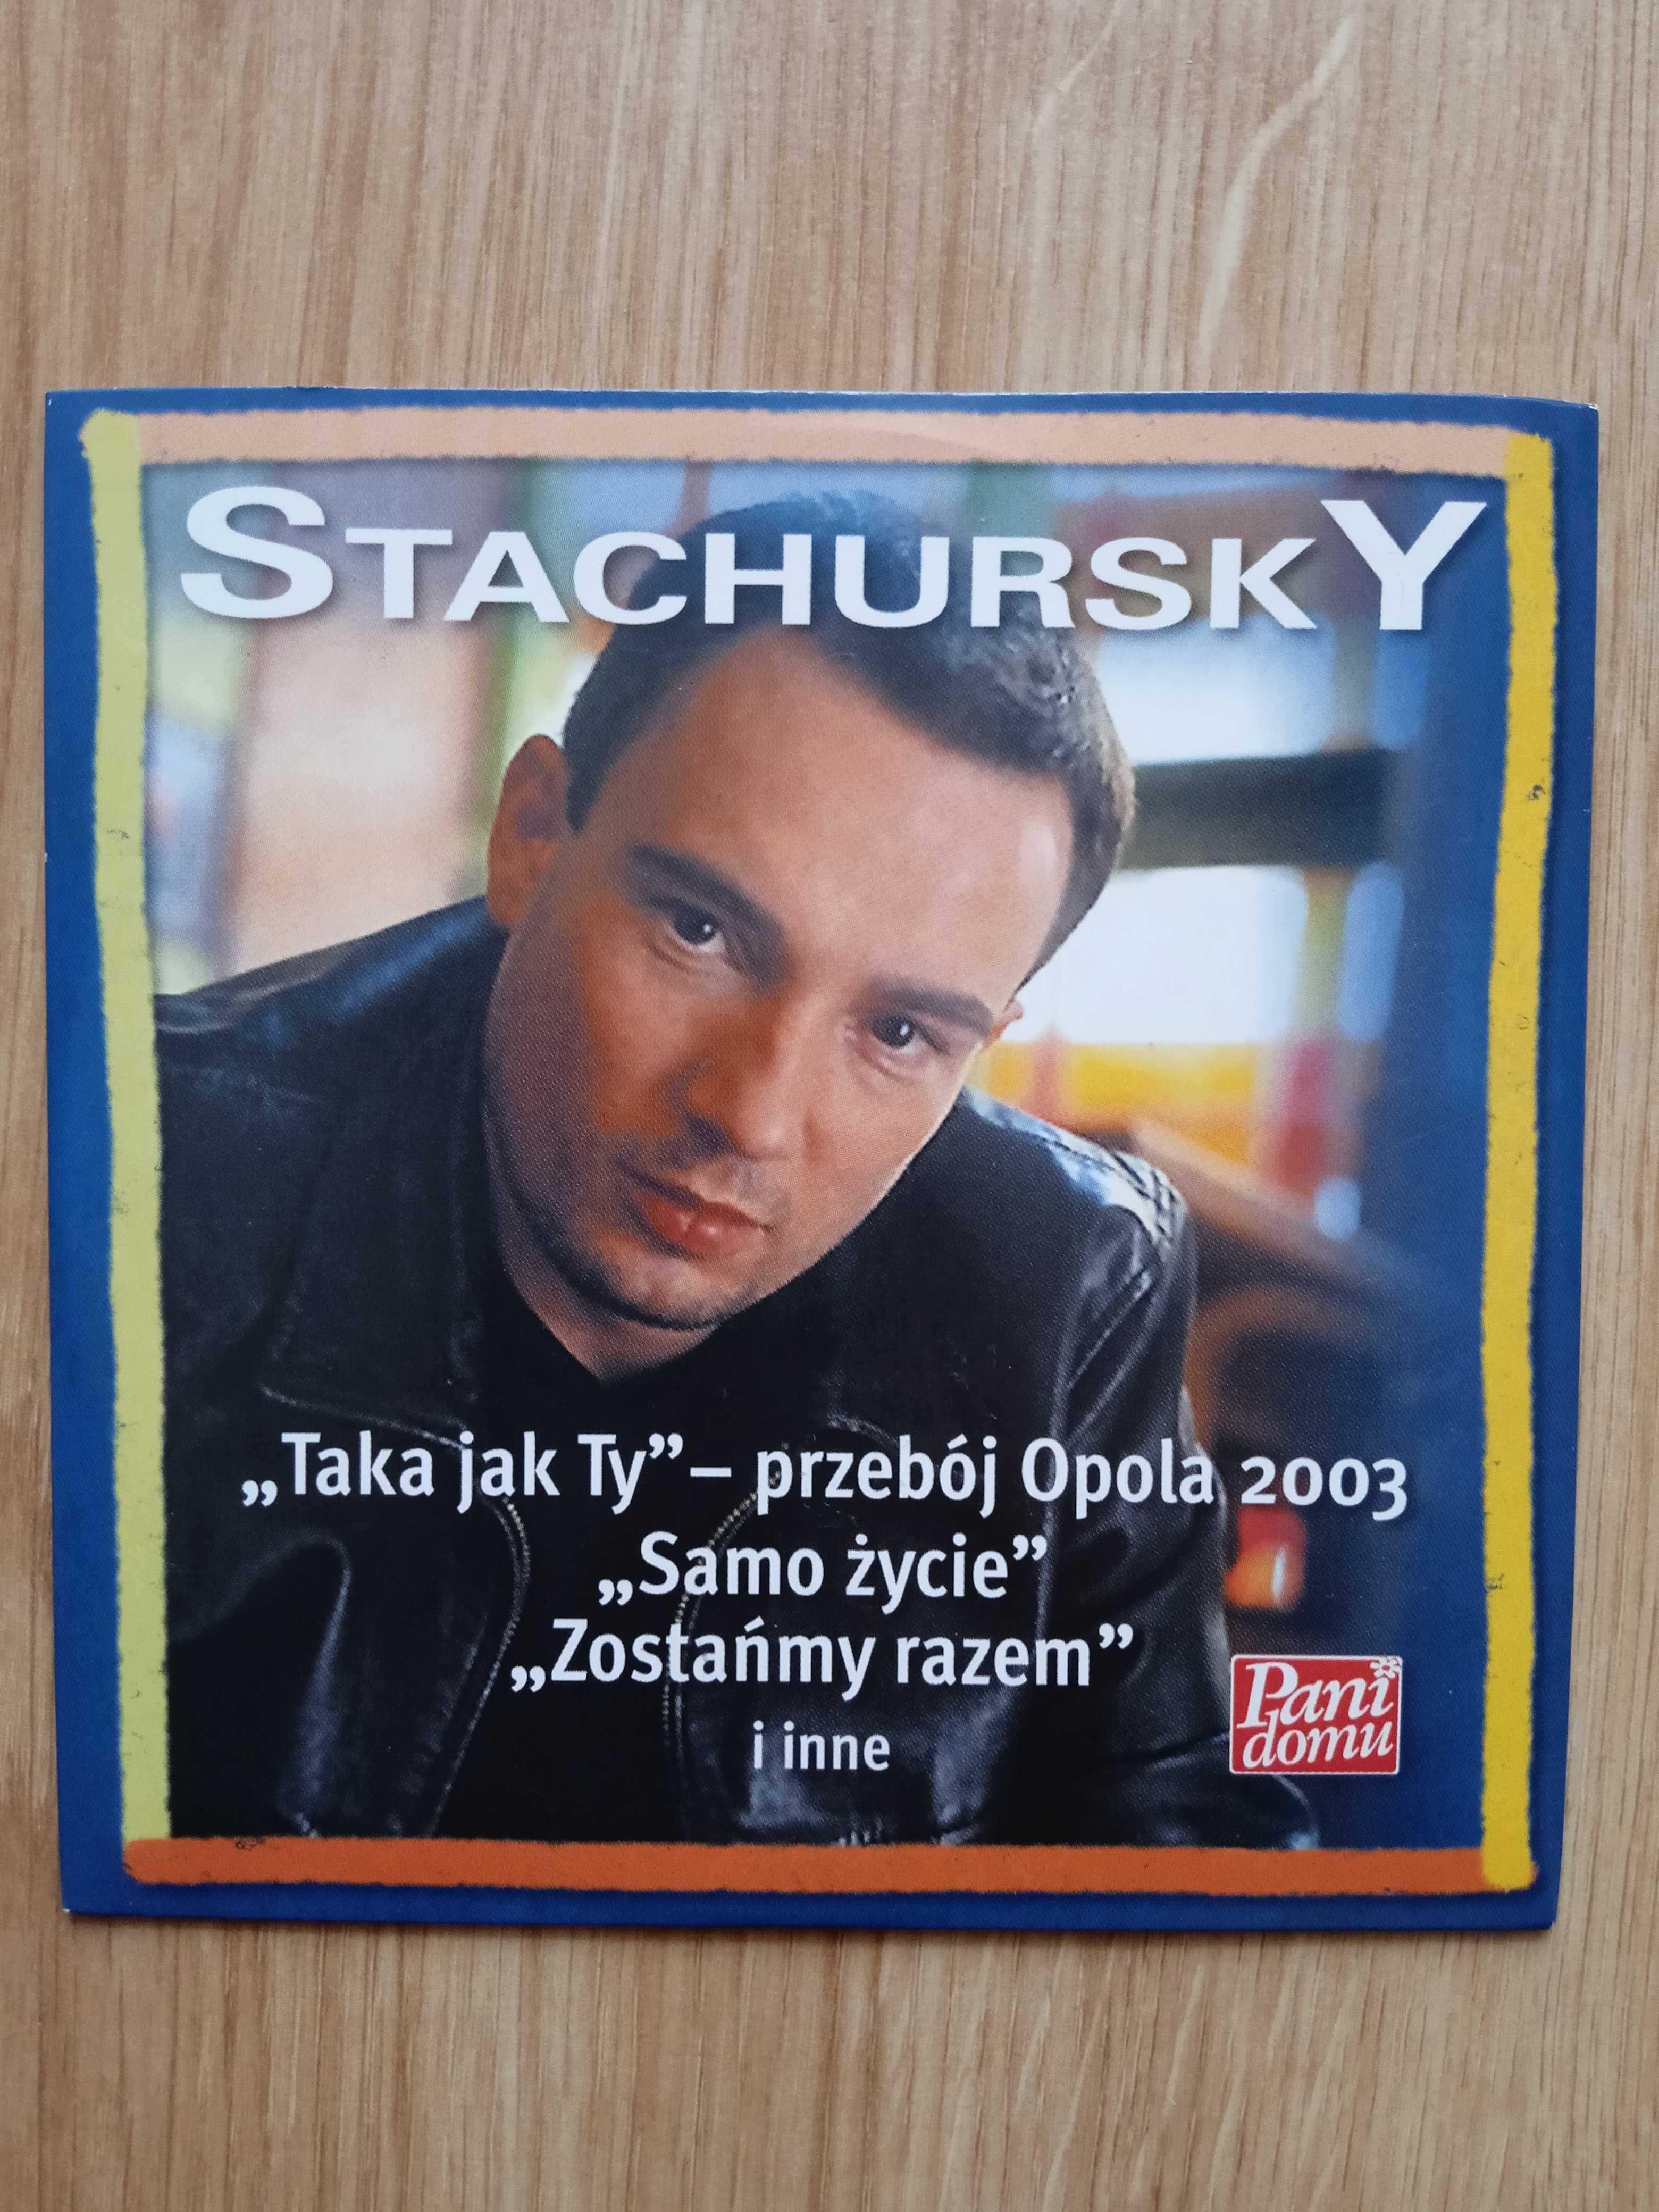 Stachursky- Samo życie, Tylko ja, Zostańmy razem... - CD